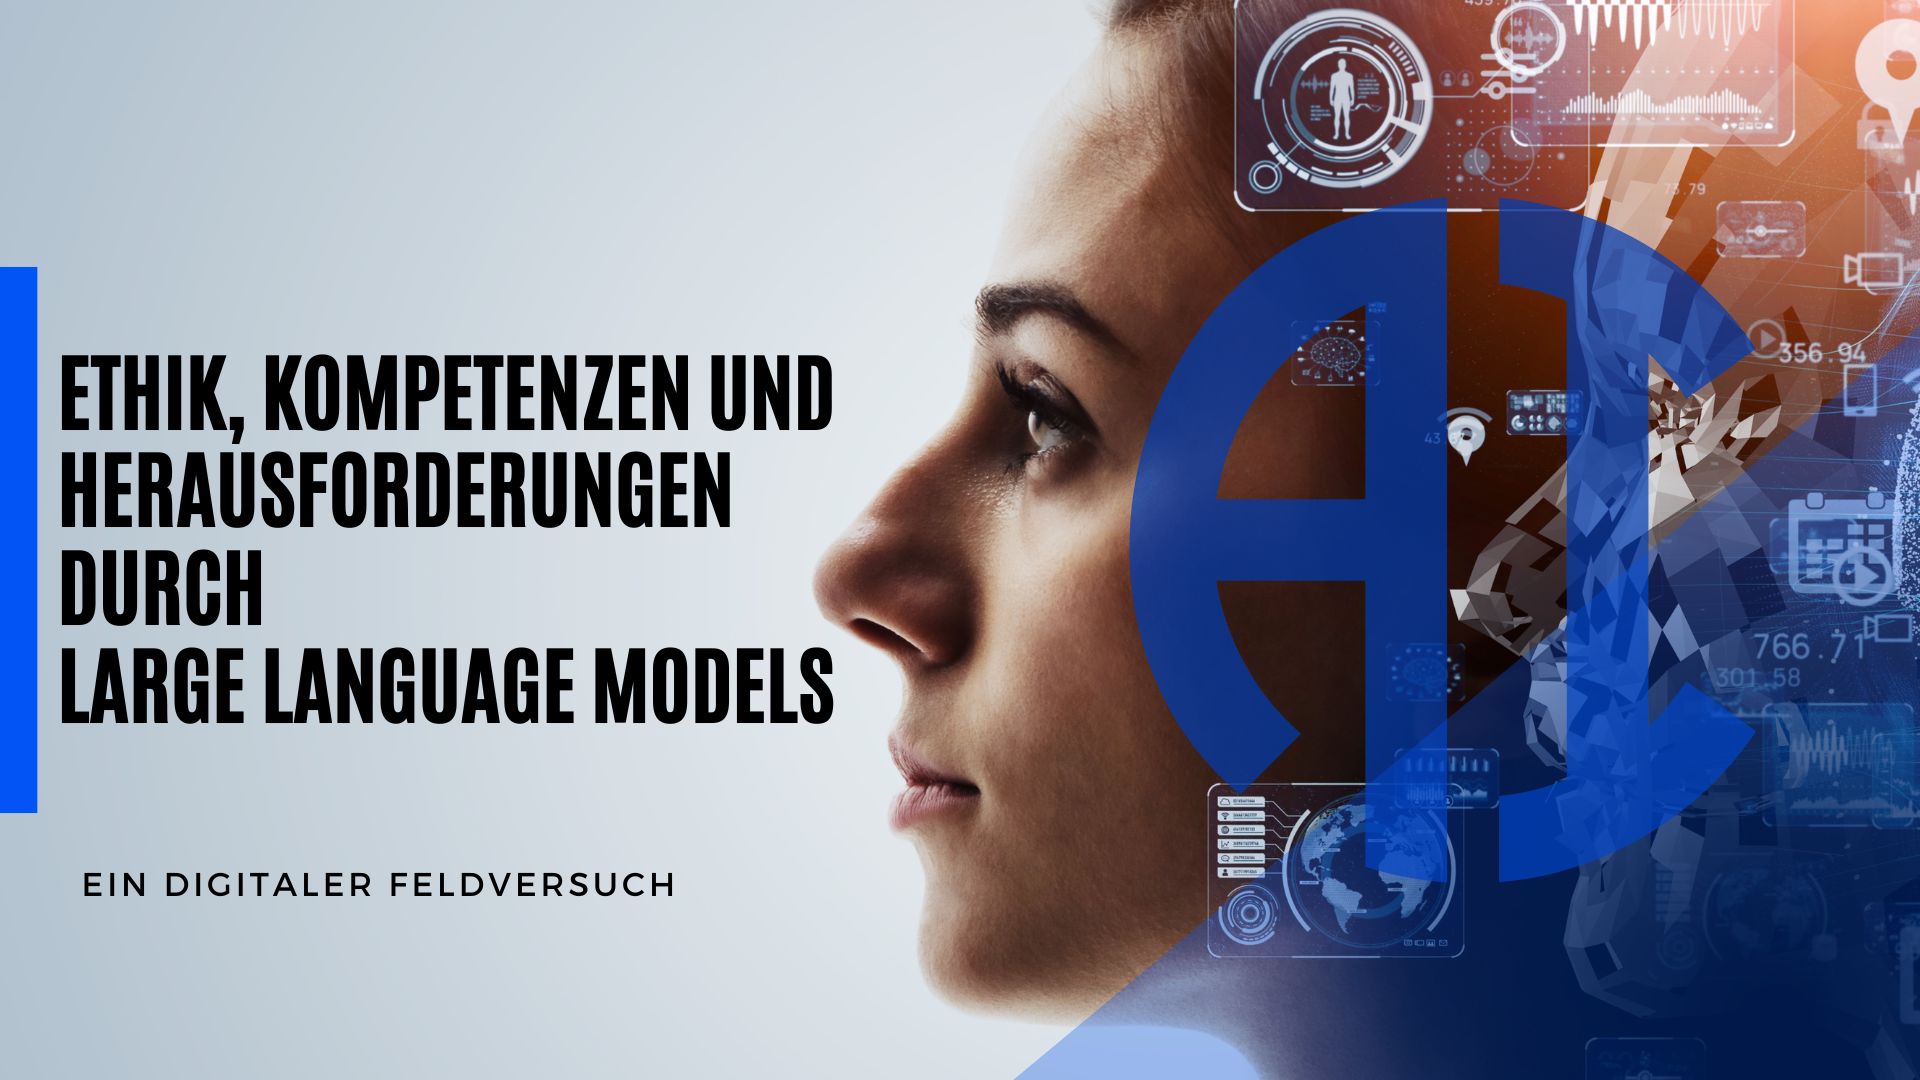 Mehr über den Artikel erfahren Ethik, Kompetenzen und Herausforderungen durch Large Language Models